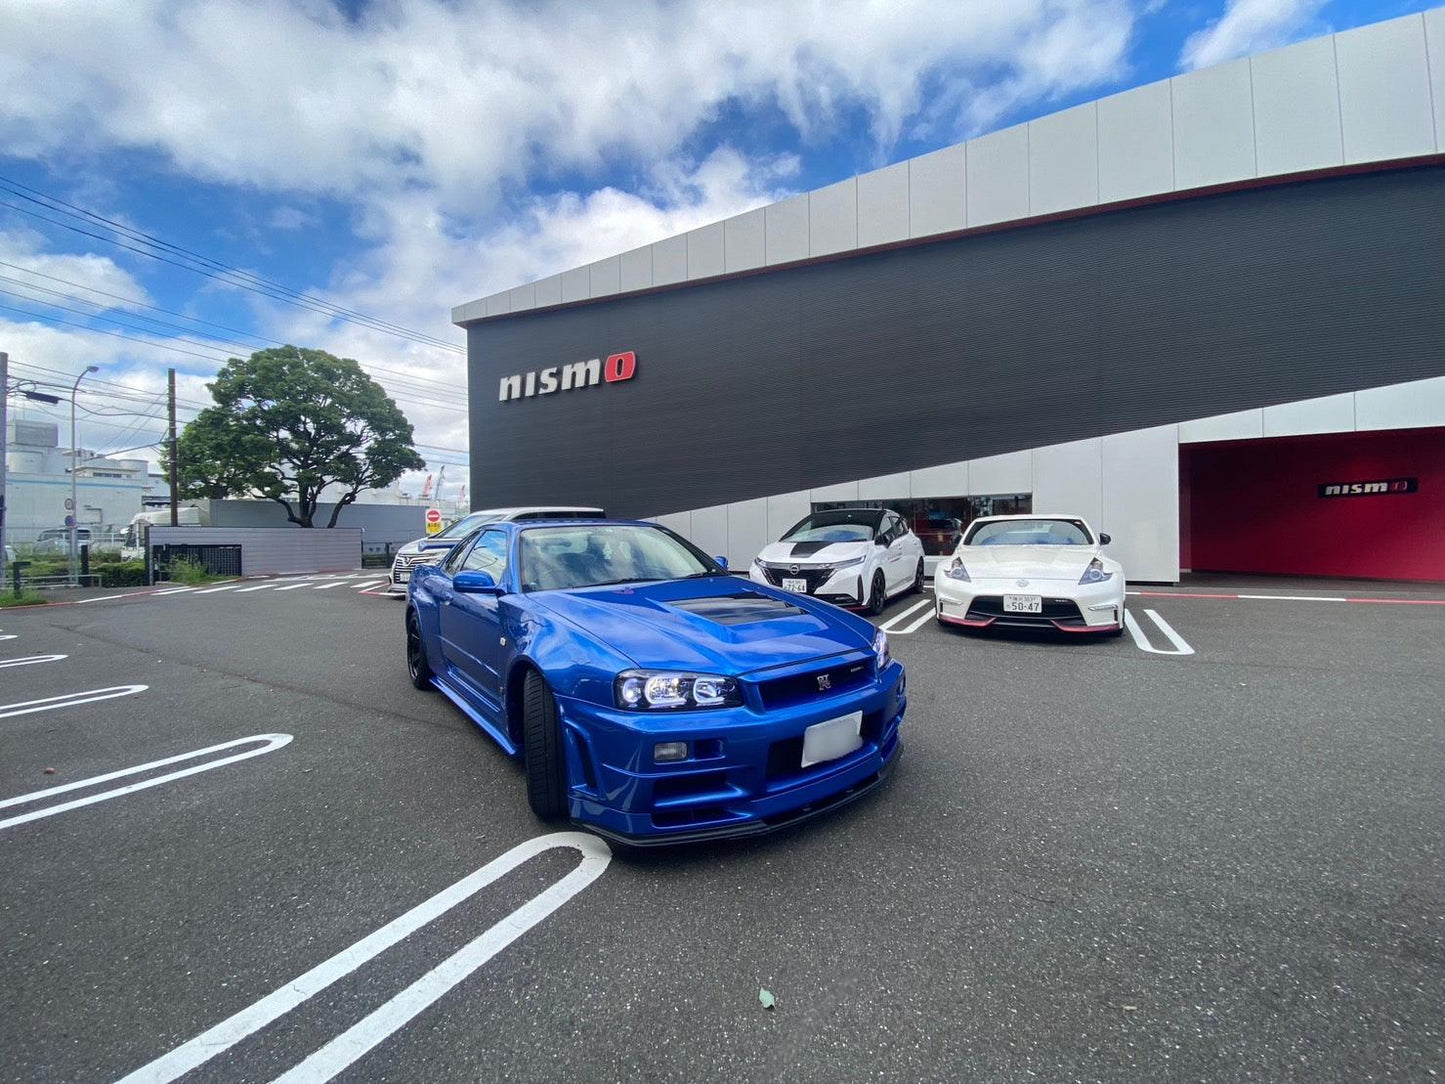 4-5hr Nissan & Nismo Fan R34 GTR experience! - JDM Global Warehouse